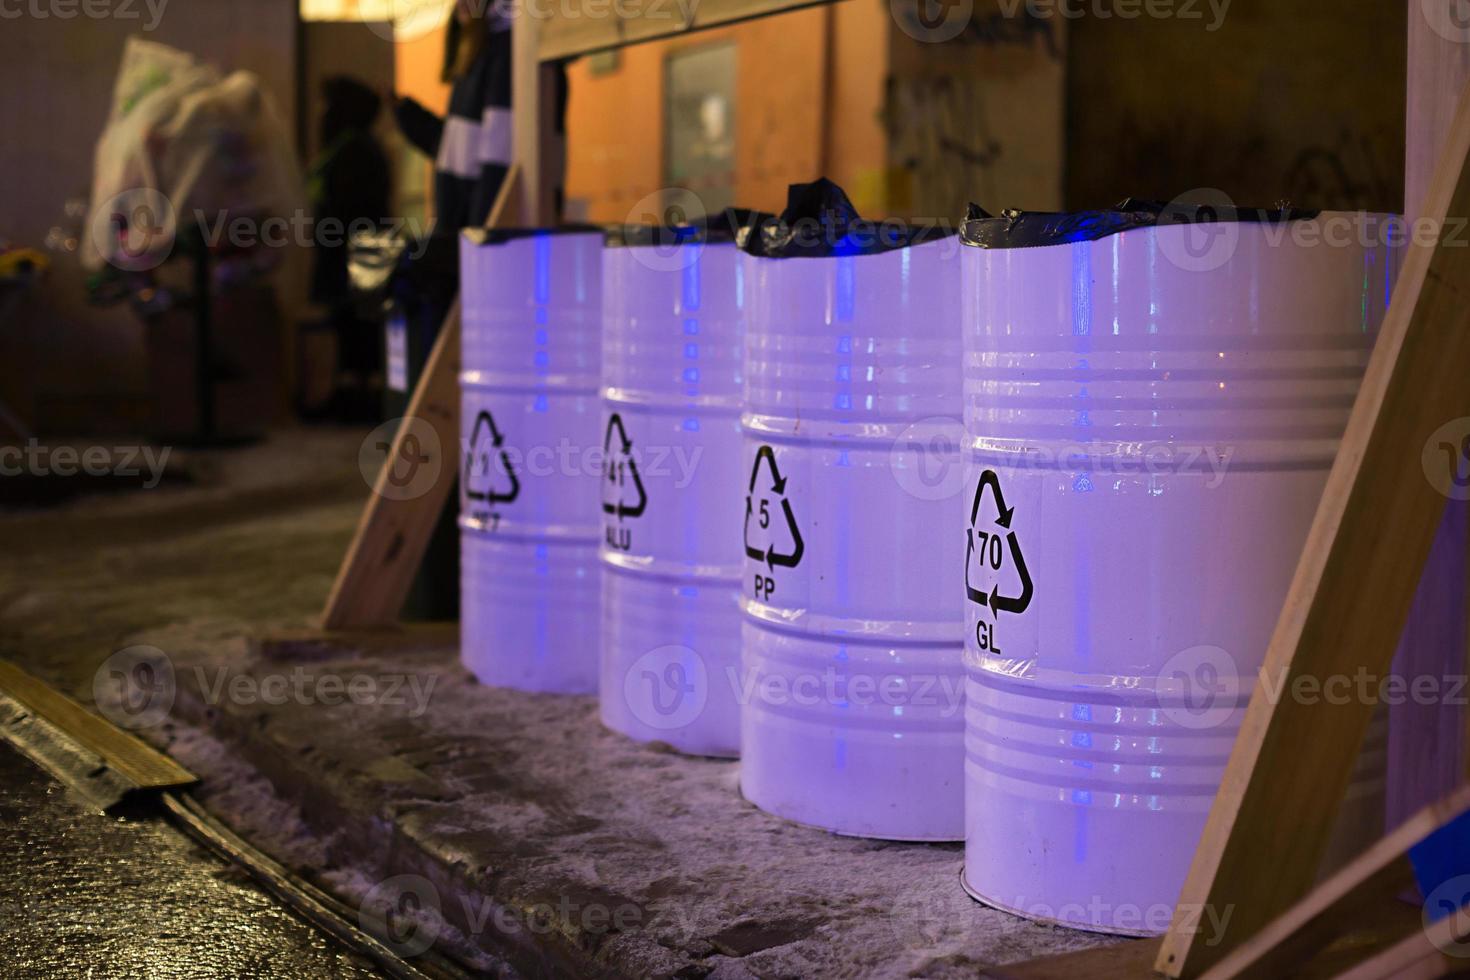 contenedores de barriles metálicos para la recogida selectiva y clasificación de basura en la calle. advertencia ambiental foto